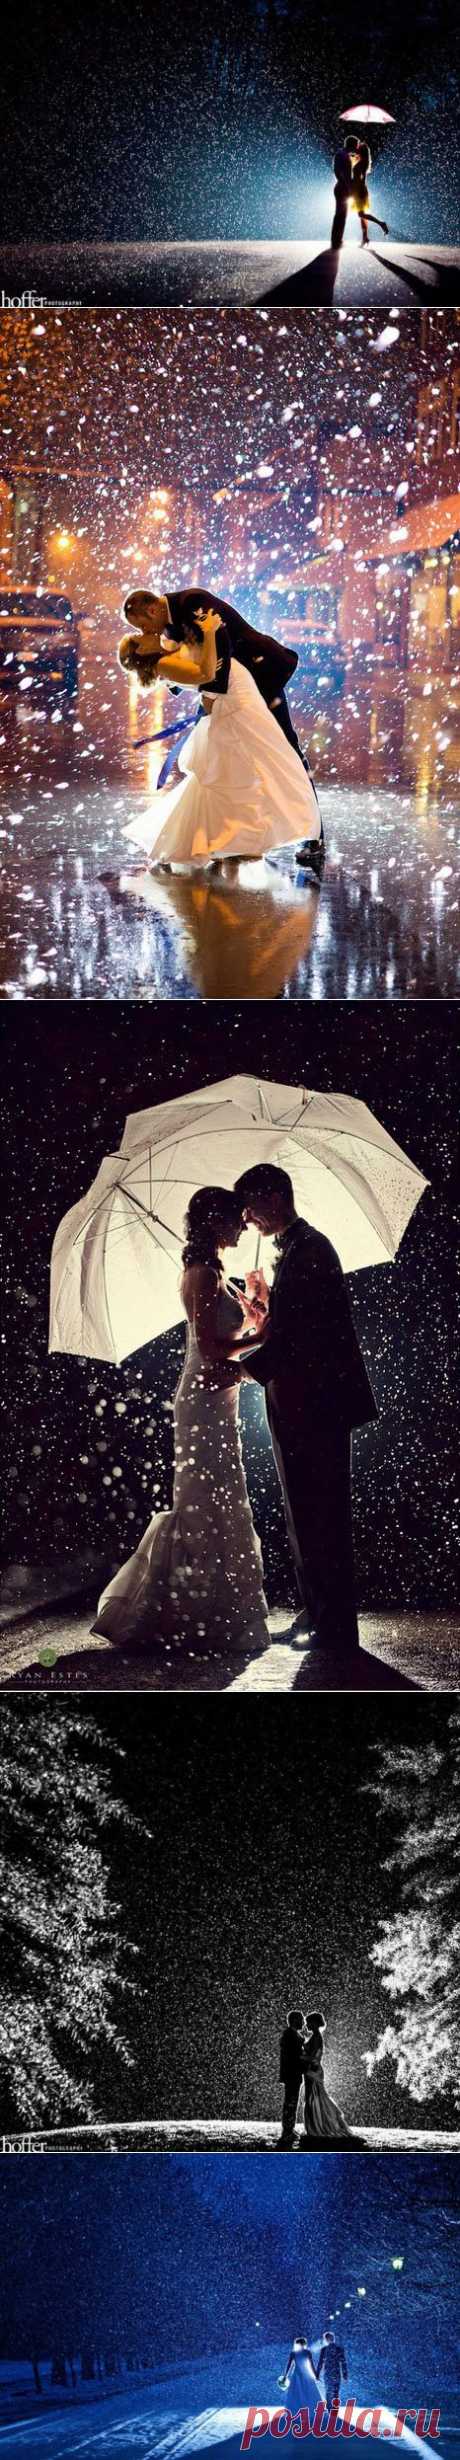 10 необыкновенно красивых свадебных фотографий, сделанных под дождём и снегом / Все для женщины